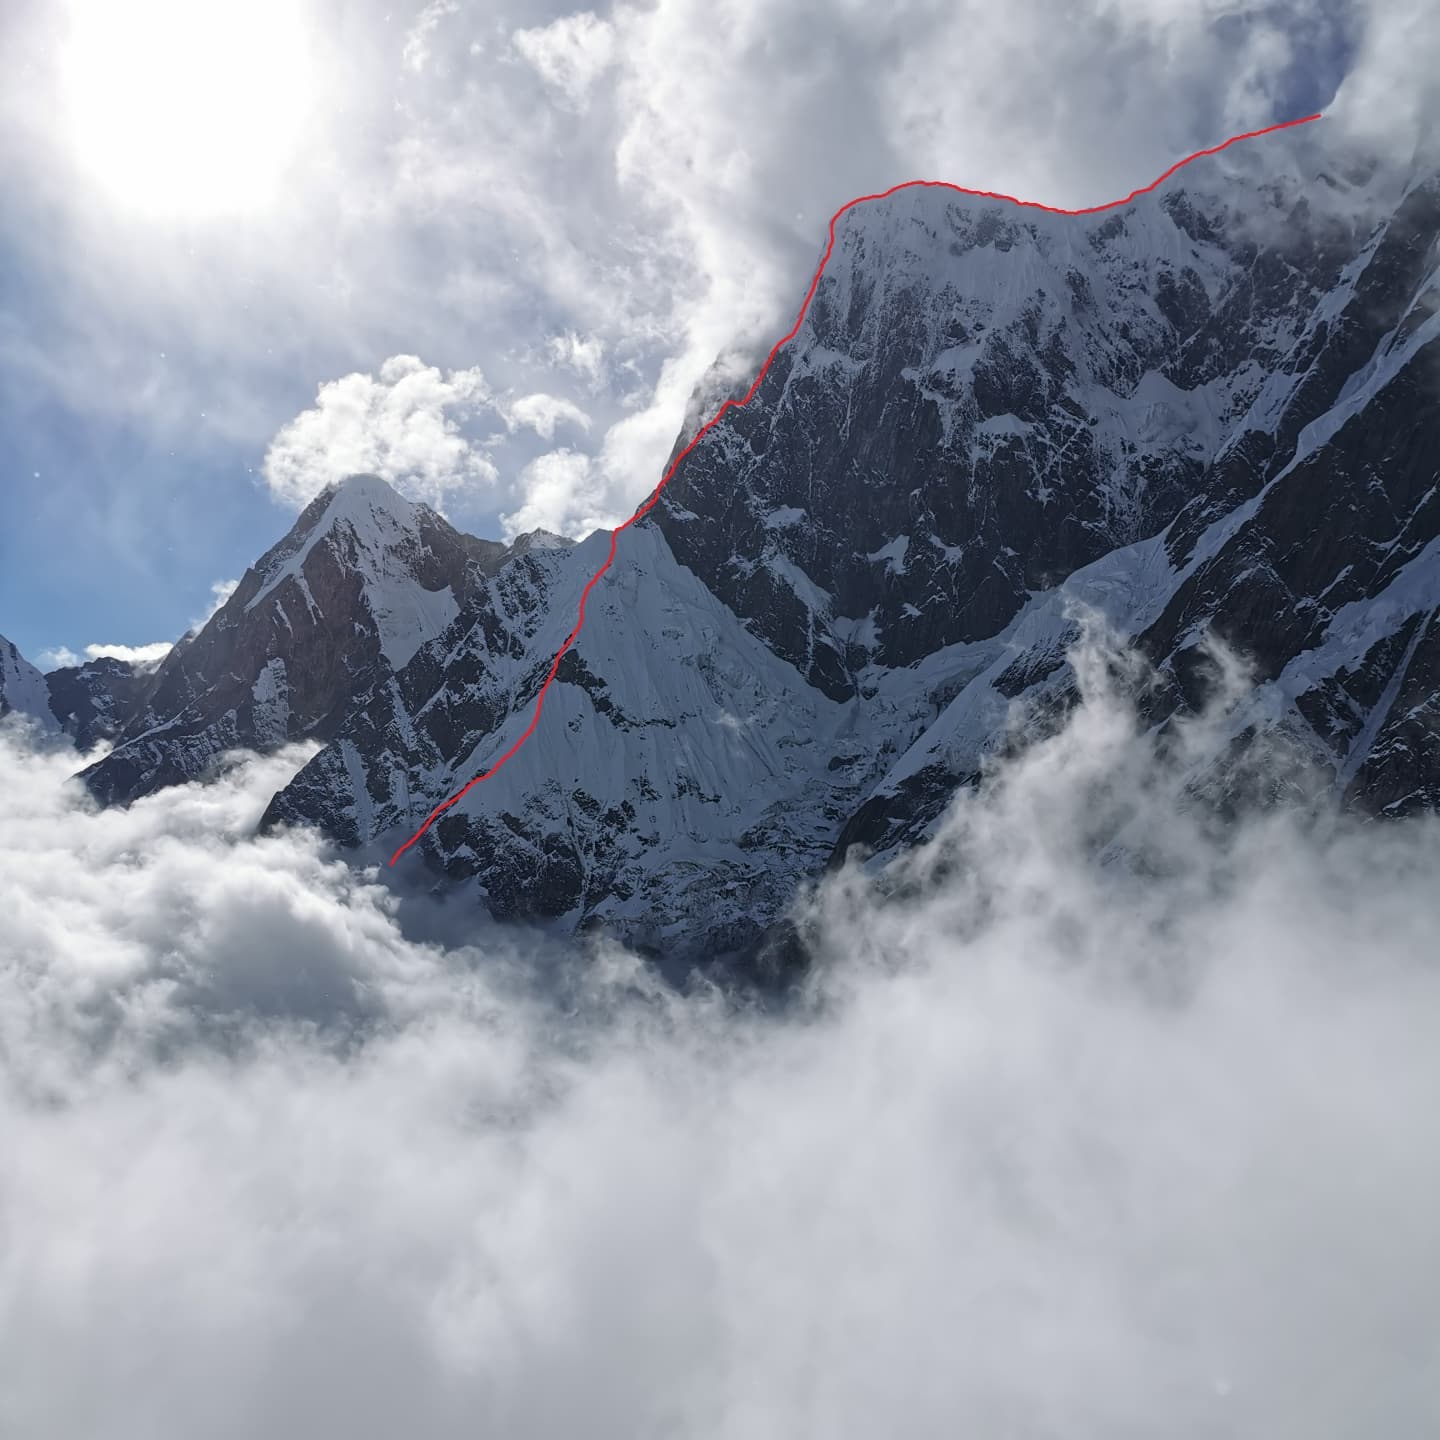 маршрут «Терпение» ("Patience") по юго-восточному гребню на вершину Аннапурна III ( Annapurna III 7555 метров) в Непале